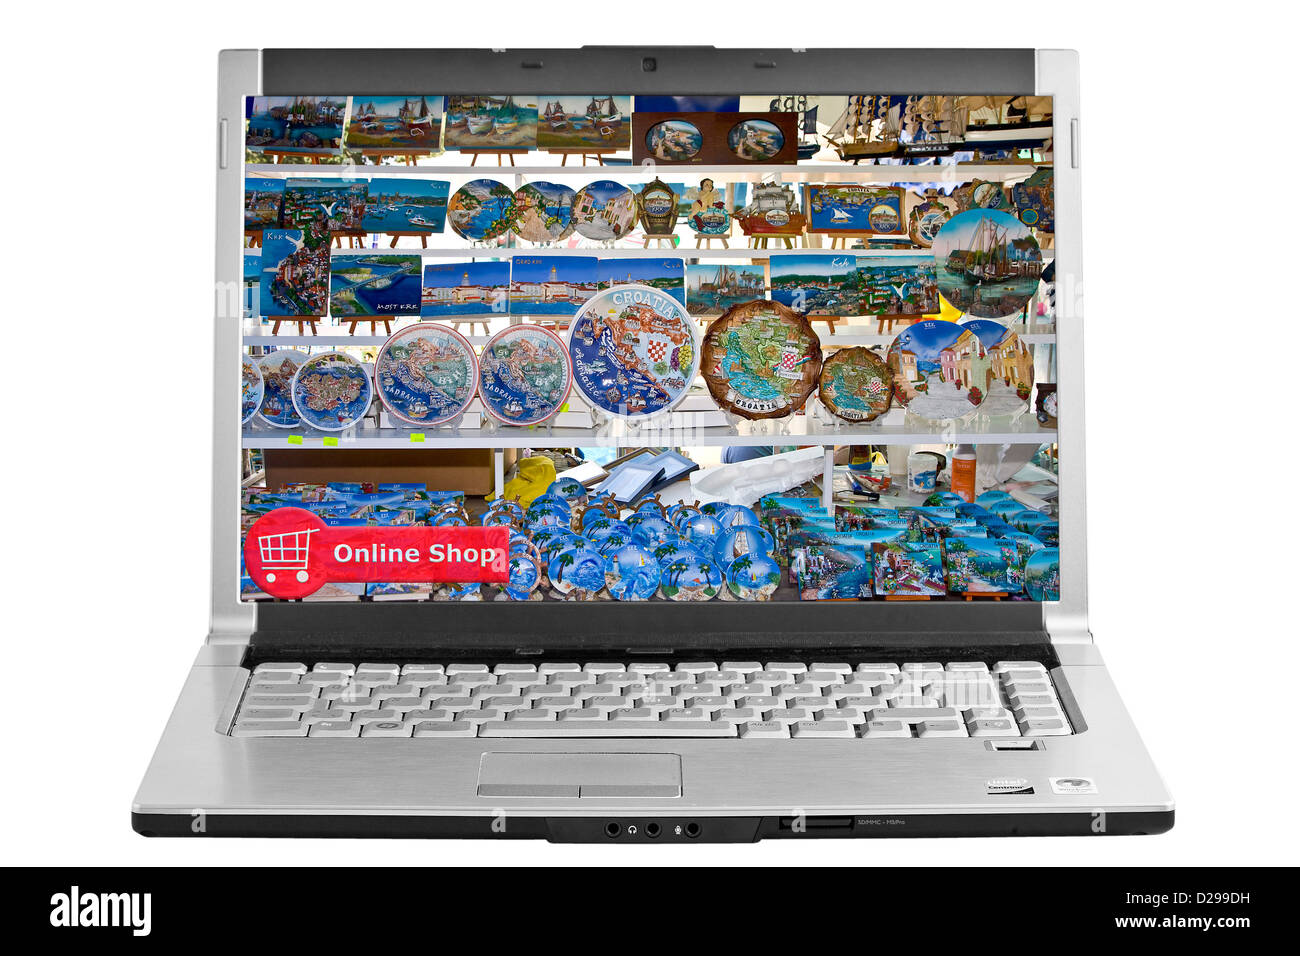 Online-Shop auf dem Computer-Bildschirm Stockfoto